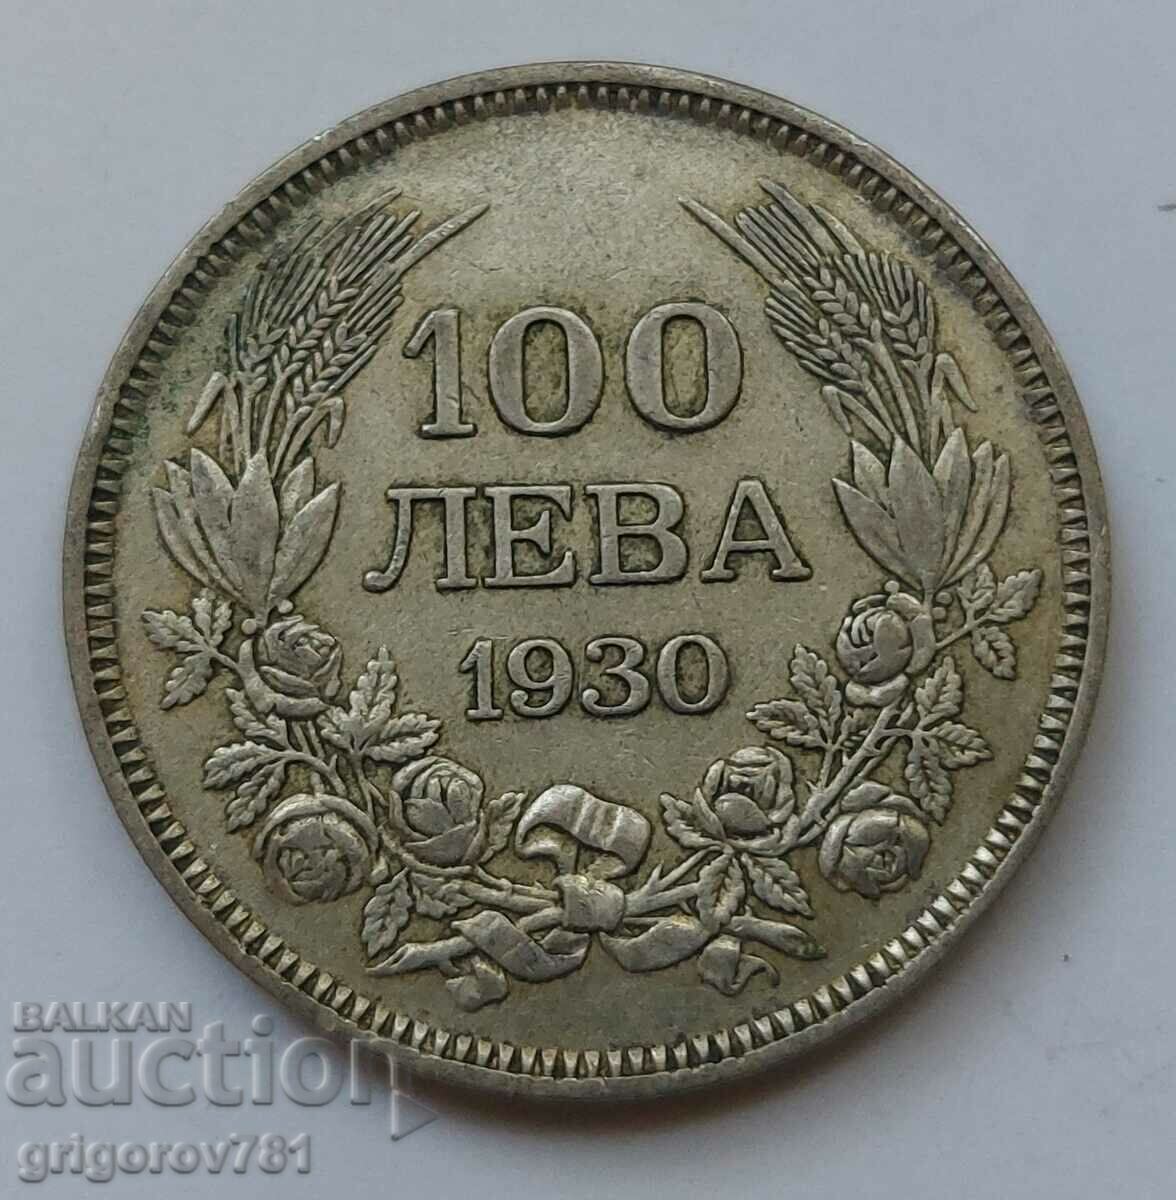 100 leva silver Bulgaria 1930 - silver coin #7